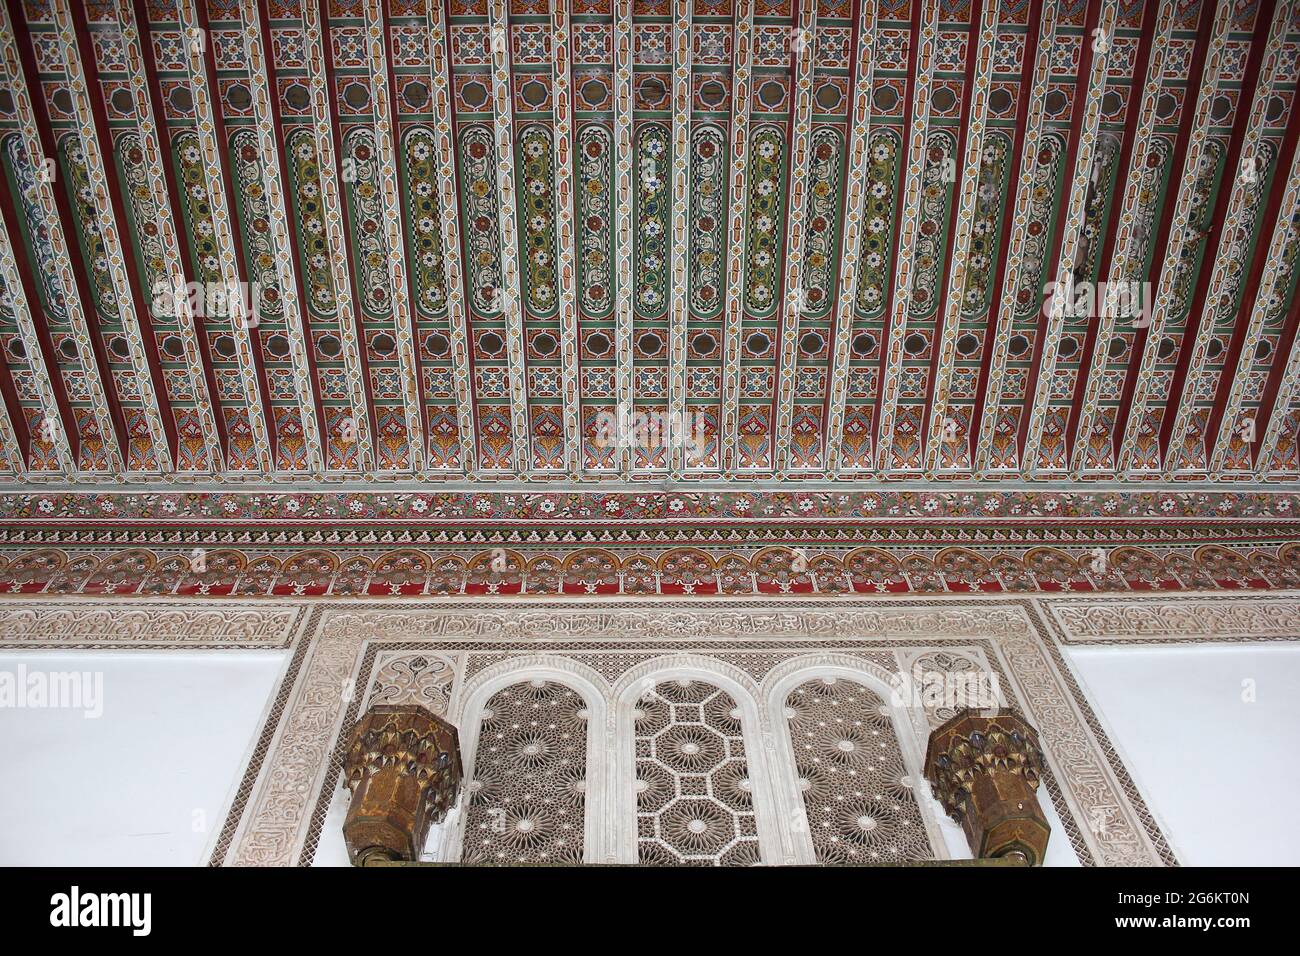 Adornados techo pintado en el Palacio Bahía Marrakech, Marruecos Foto de stock